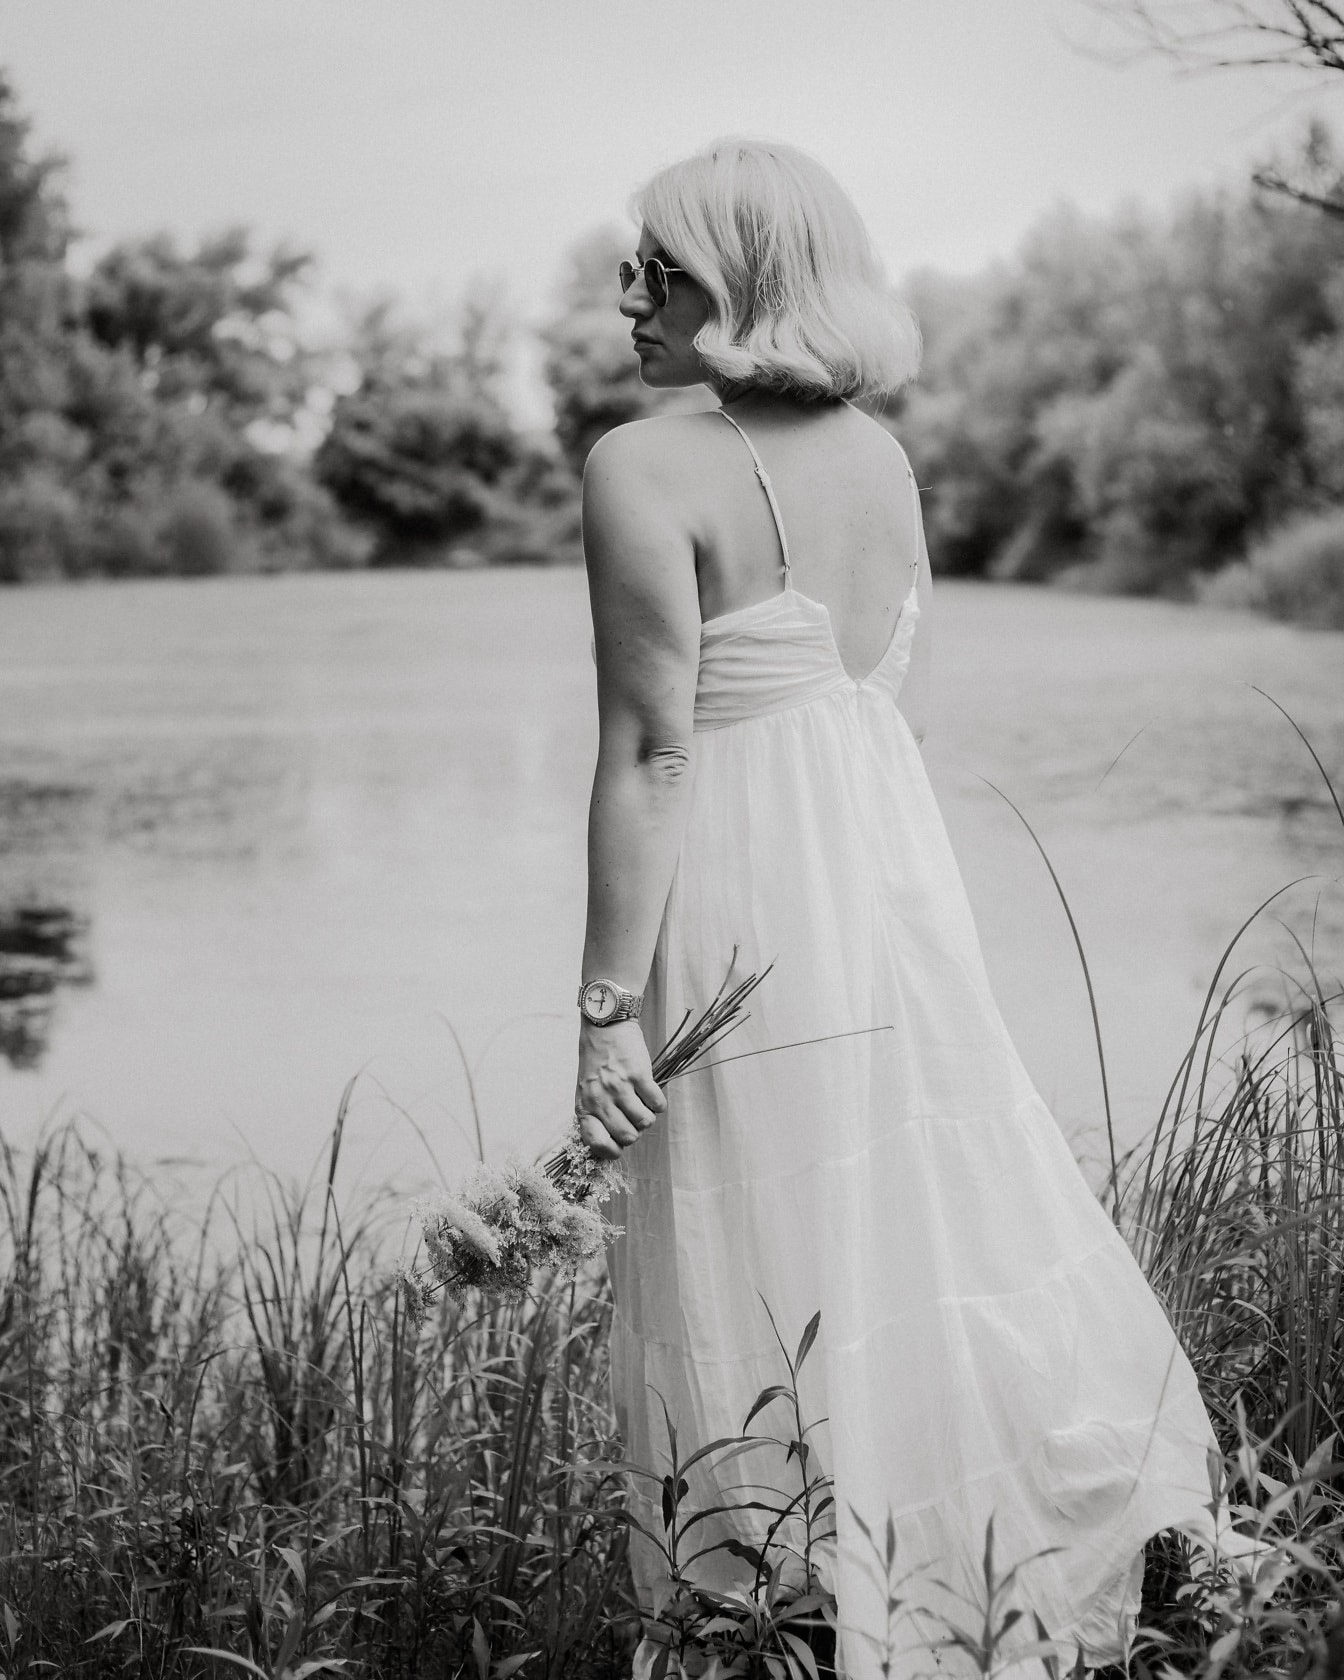 Loira posando em vestido branco por retrato monocromático à beira do lago